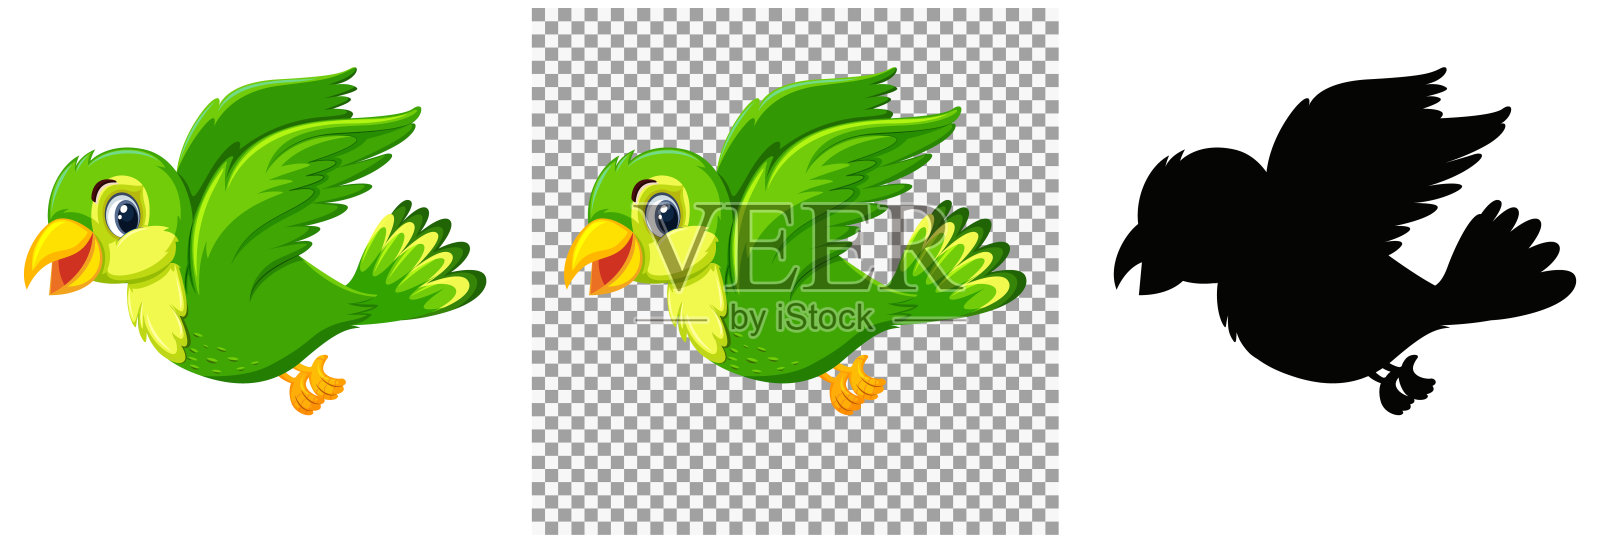 可爱的绿色小鸟卡通人物设计元素图片